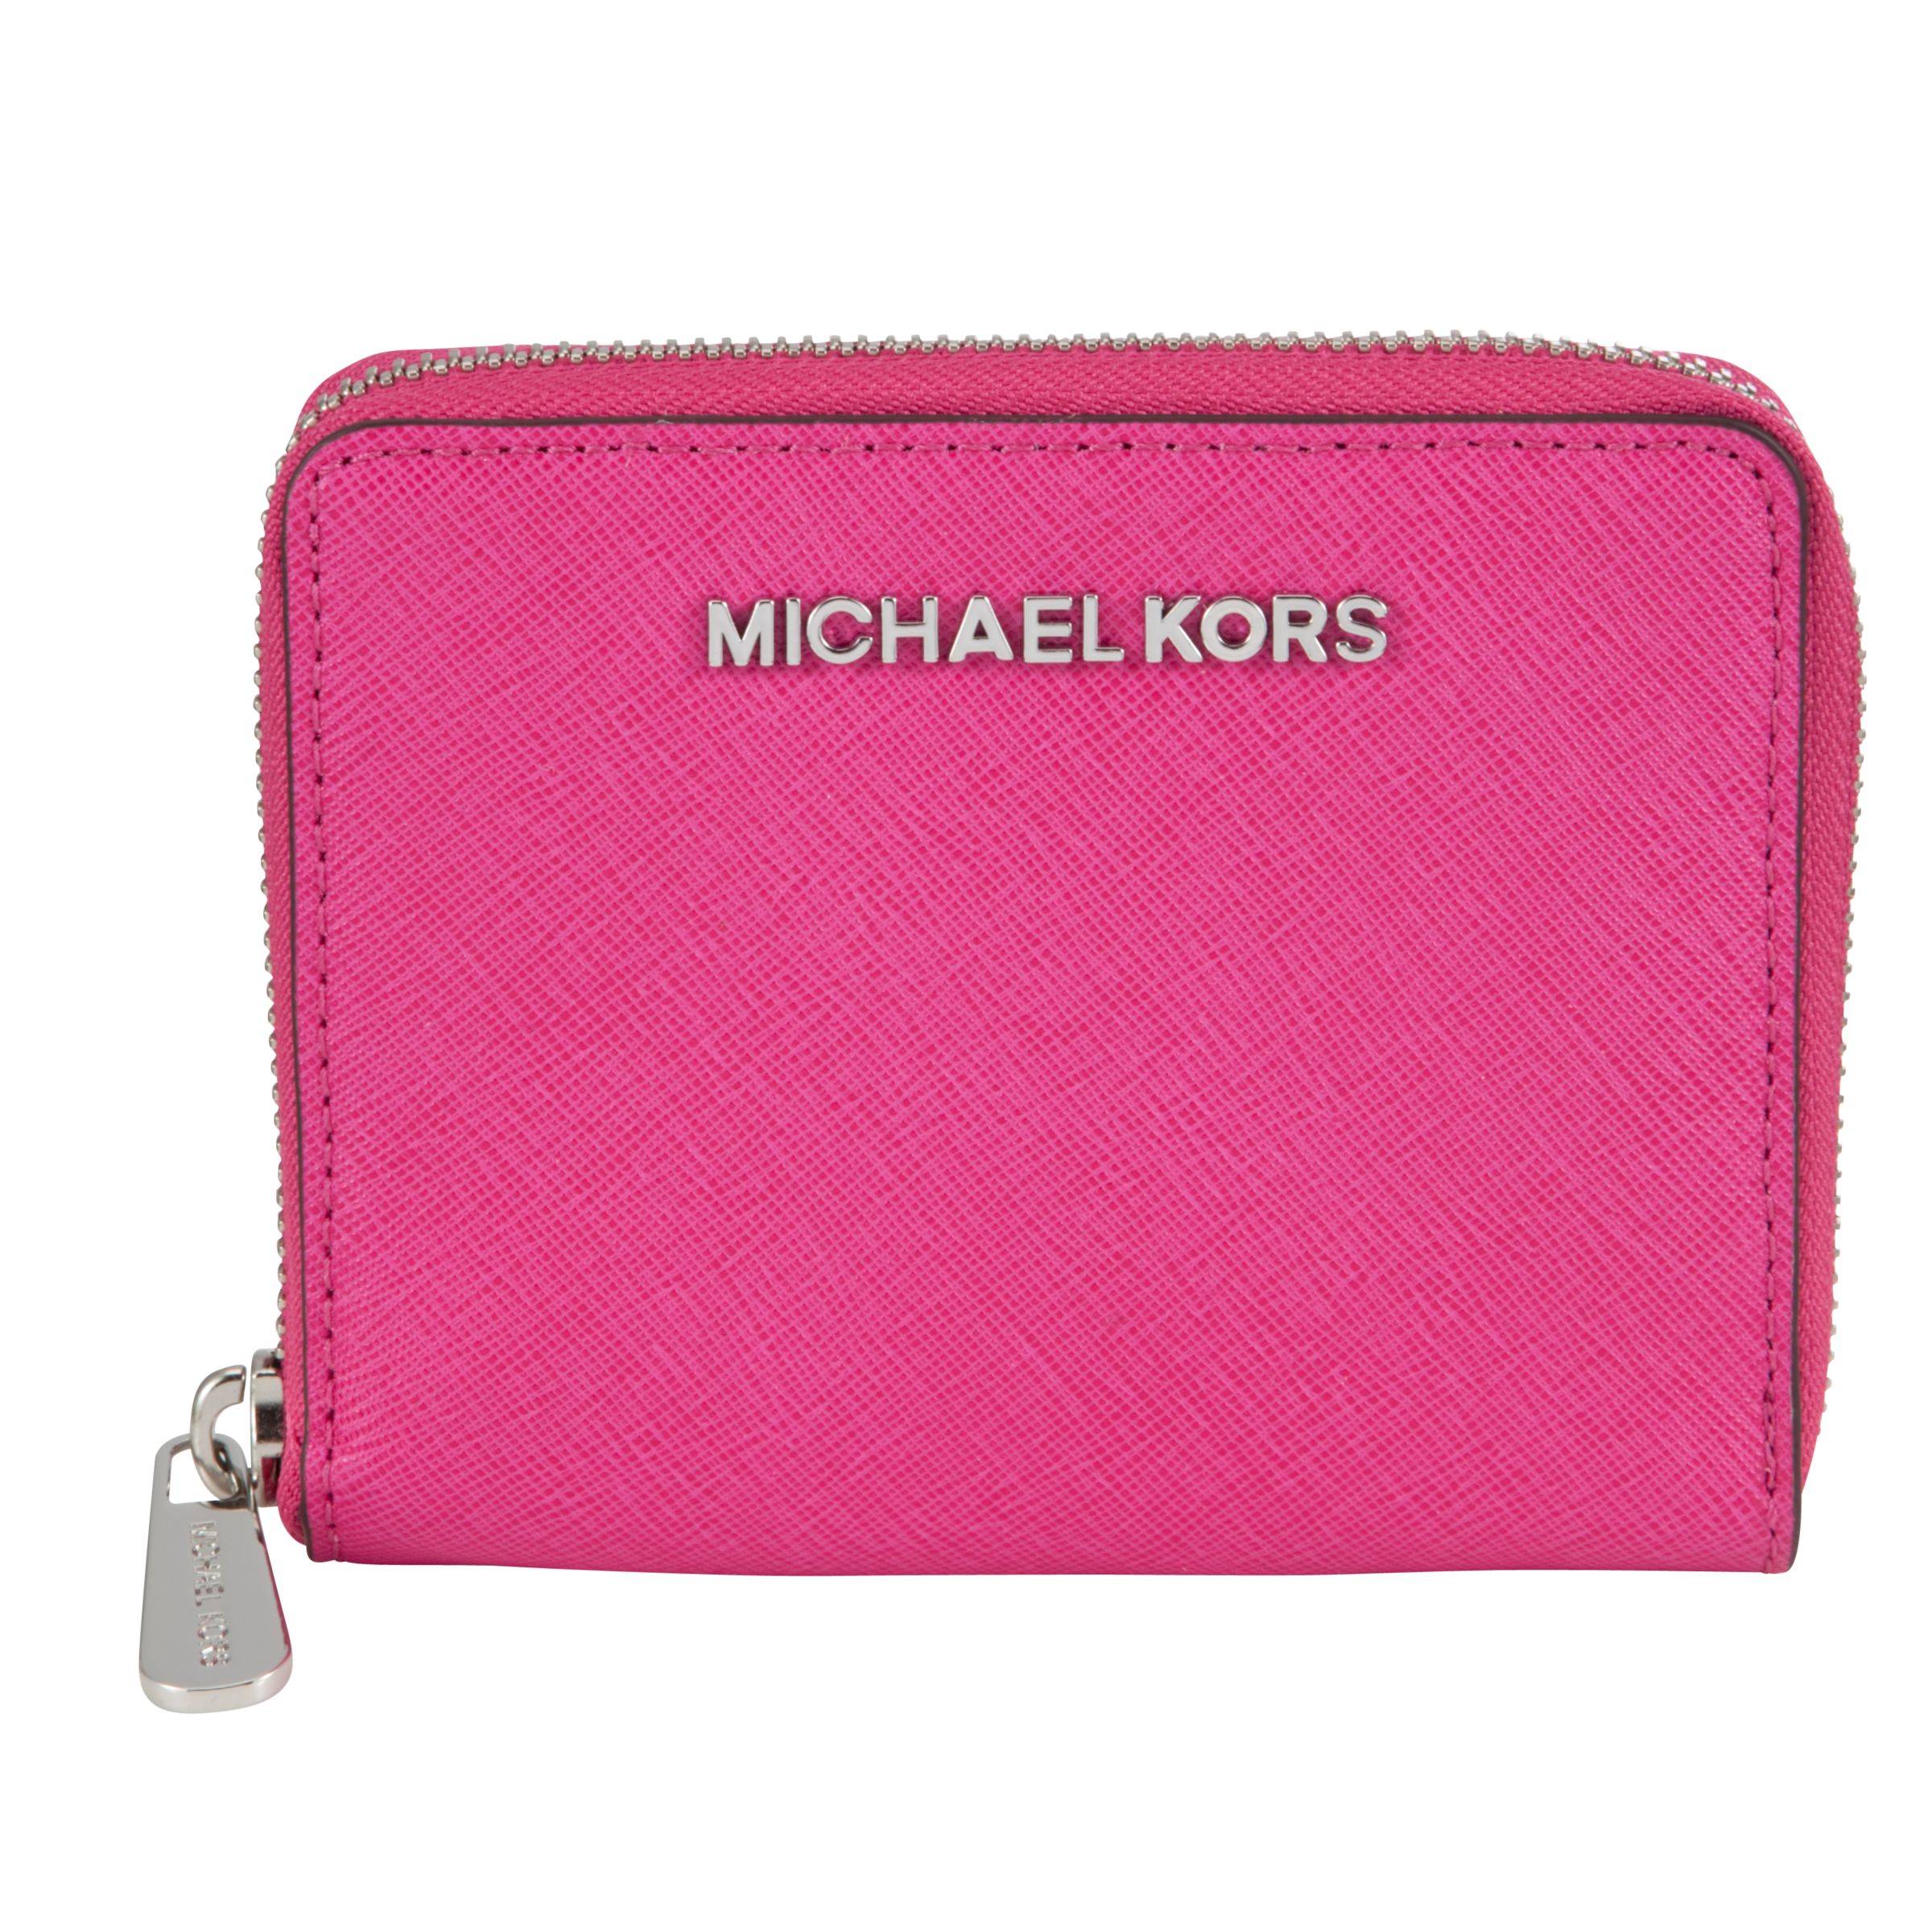 Michael Kors Red Leather Jet Set Zip Around Wallet